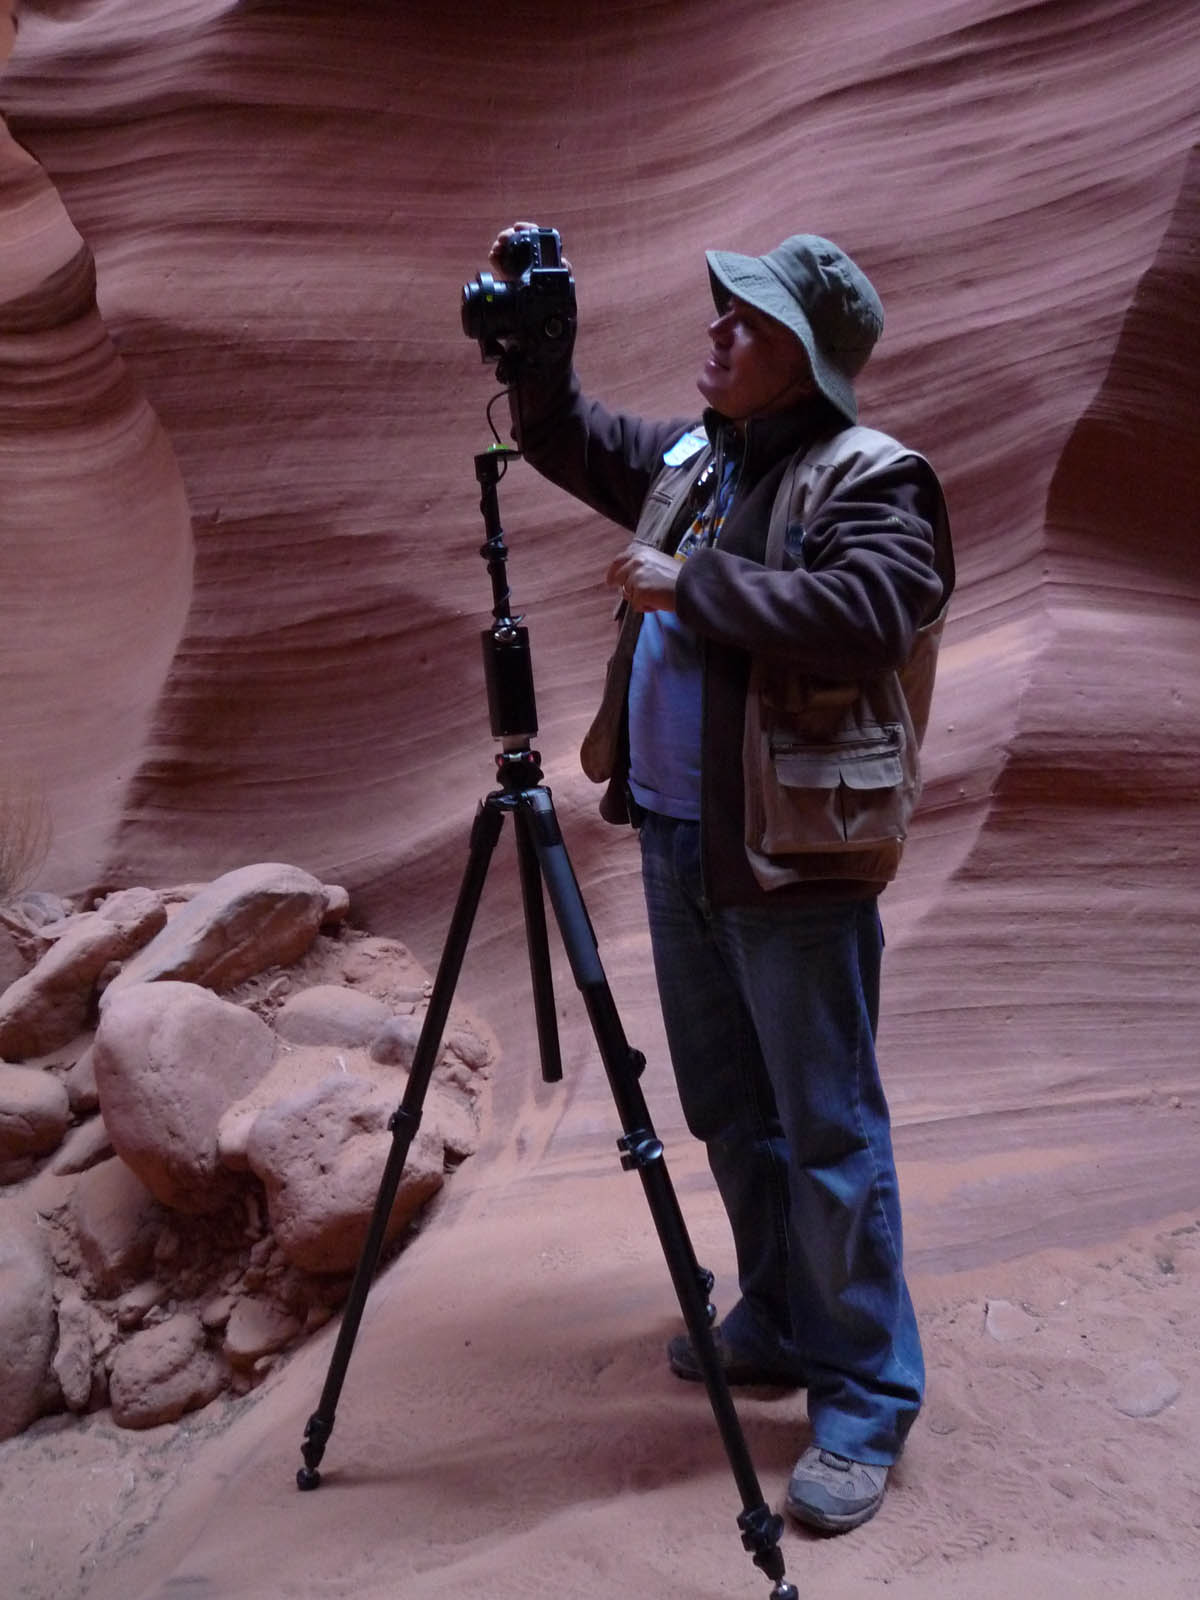 Carlos Chegado shooting 360 Panoramas inside Lower Antelope Canyon